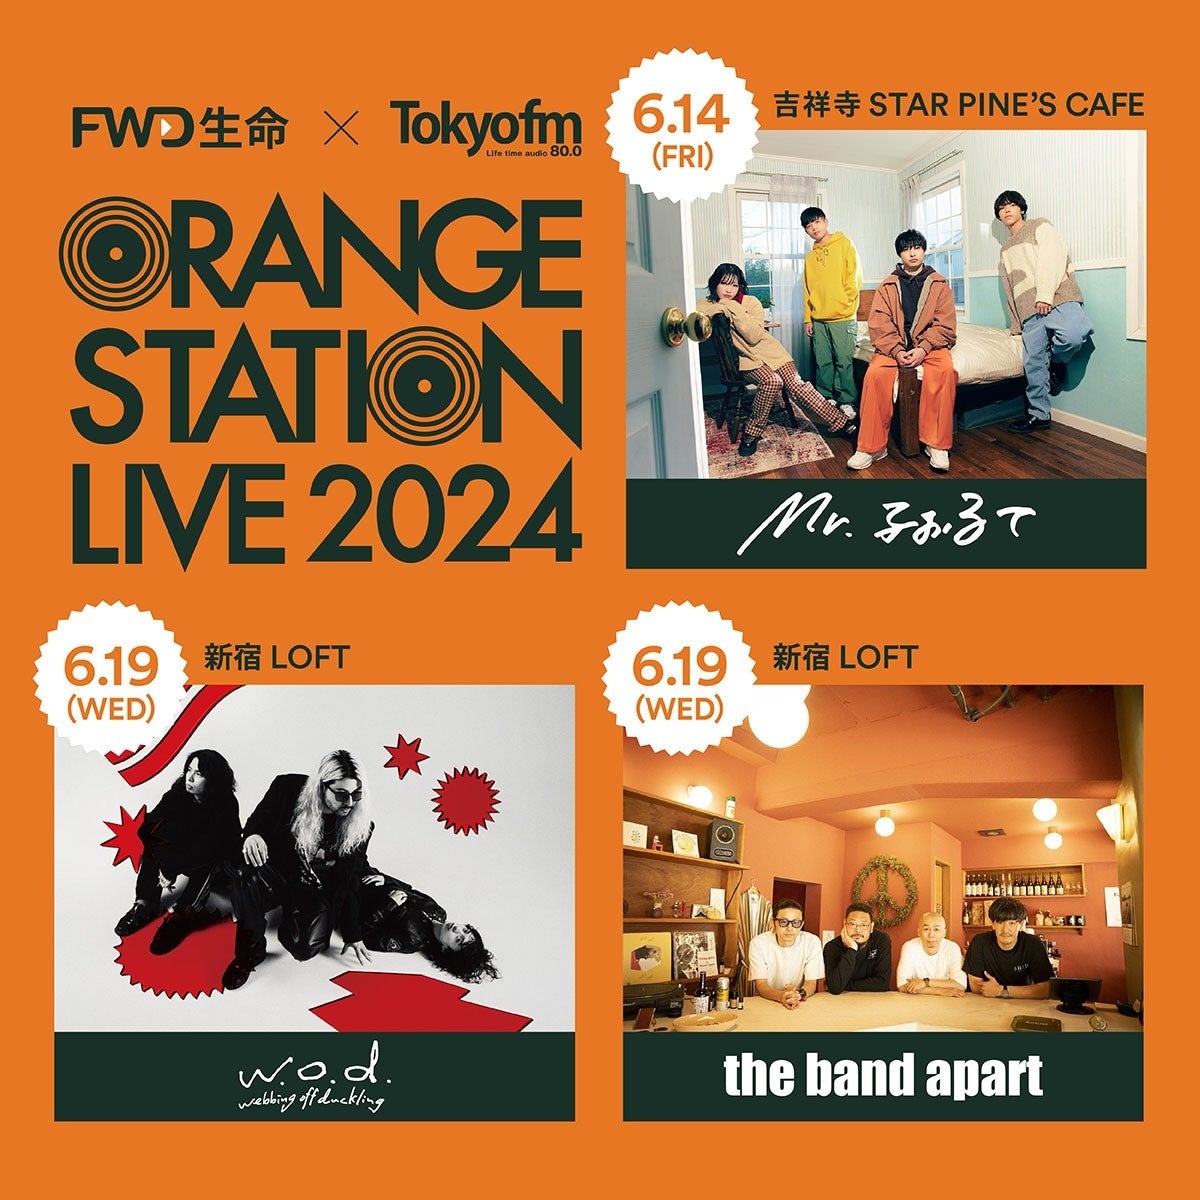 生きた歌声やダンスパフォーマンスを届ける“歌い手”グループ
『Seasons』が6月30日(日)に渋谷REXにてLIVEを開催！